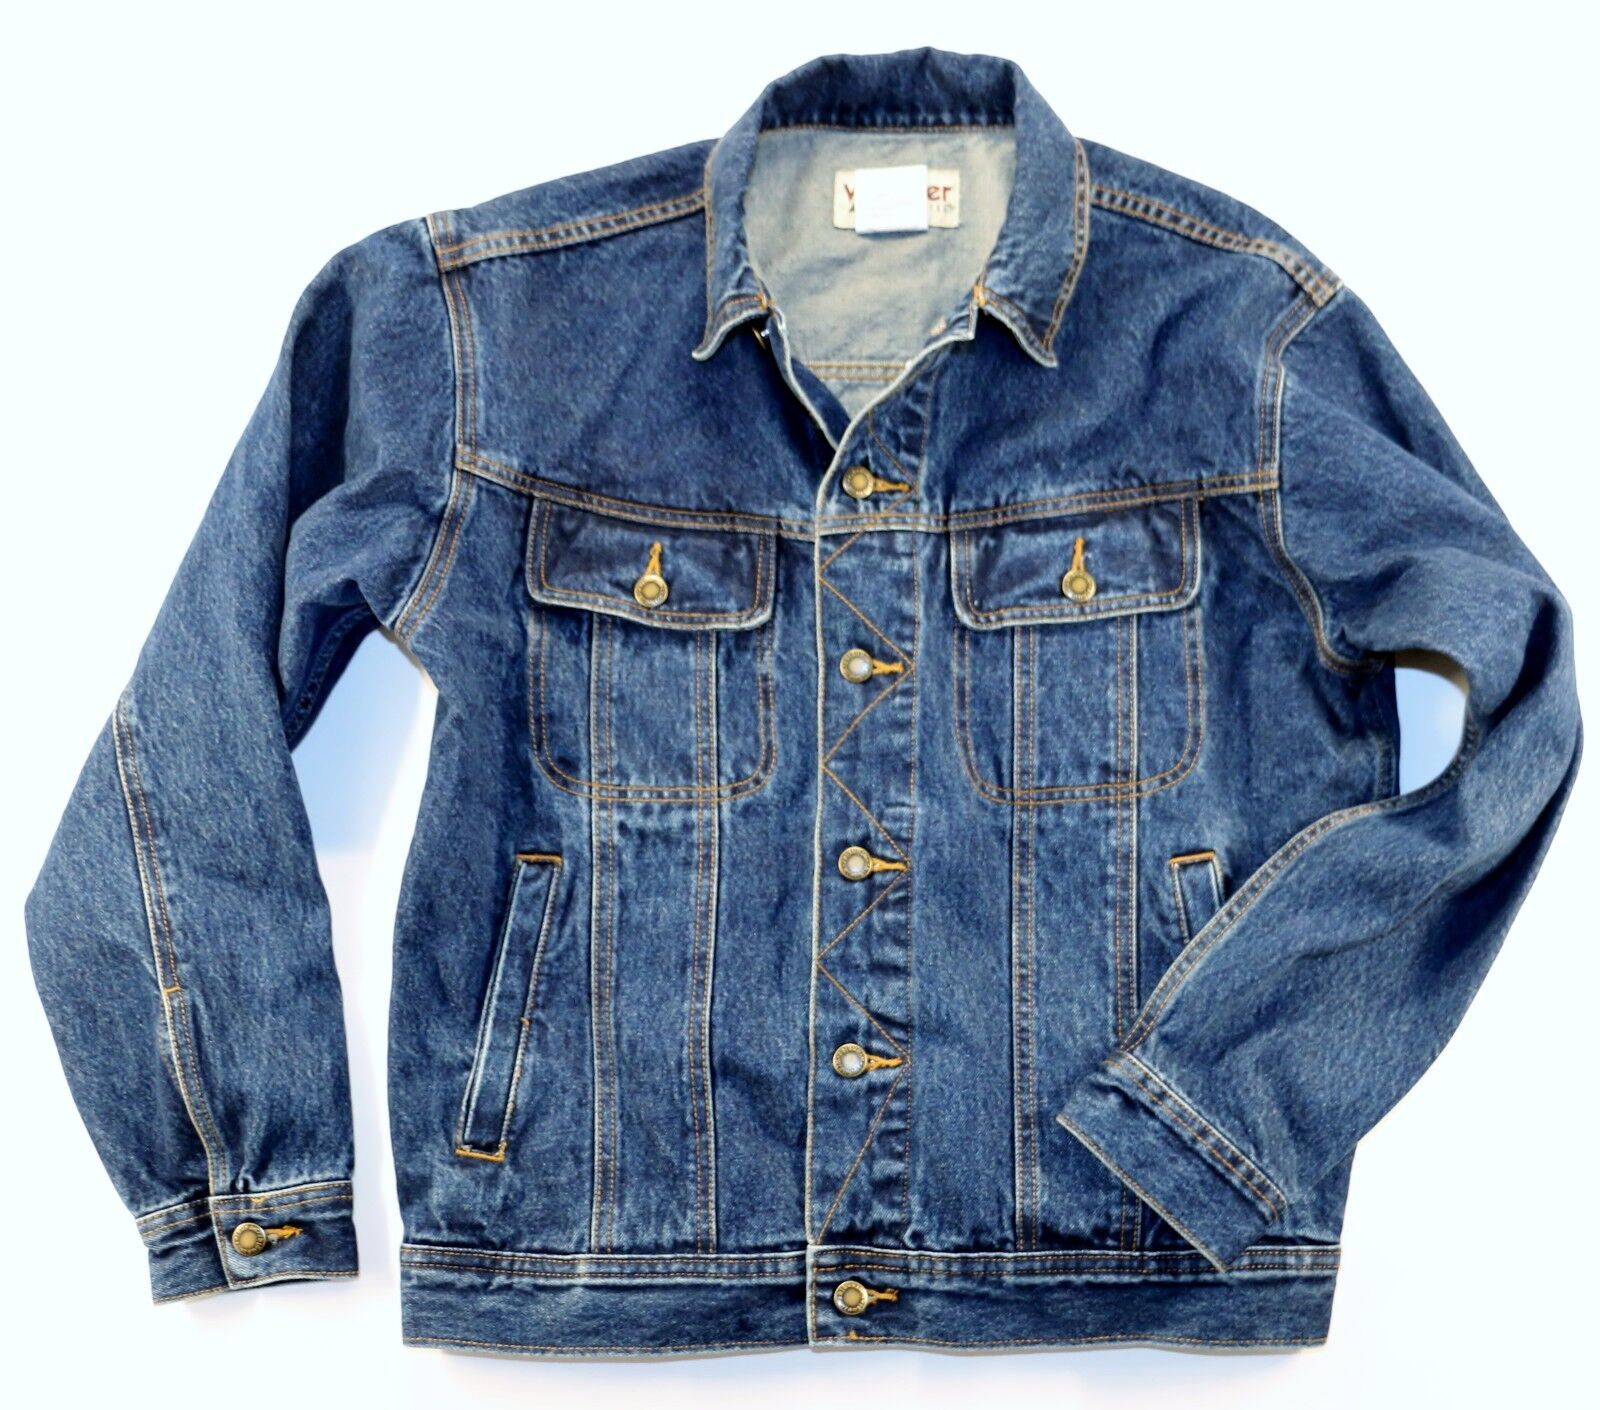 New Wrangler Rugged Wear Denim Jacket Men's Size L Antique Indigo Color  14.5 oz